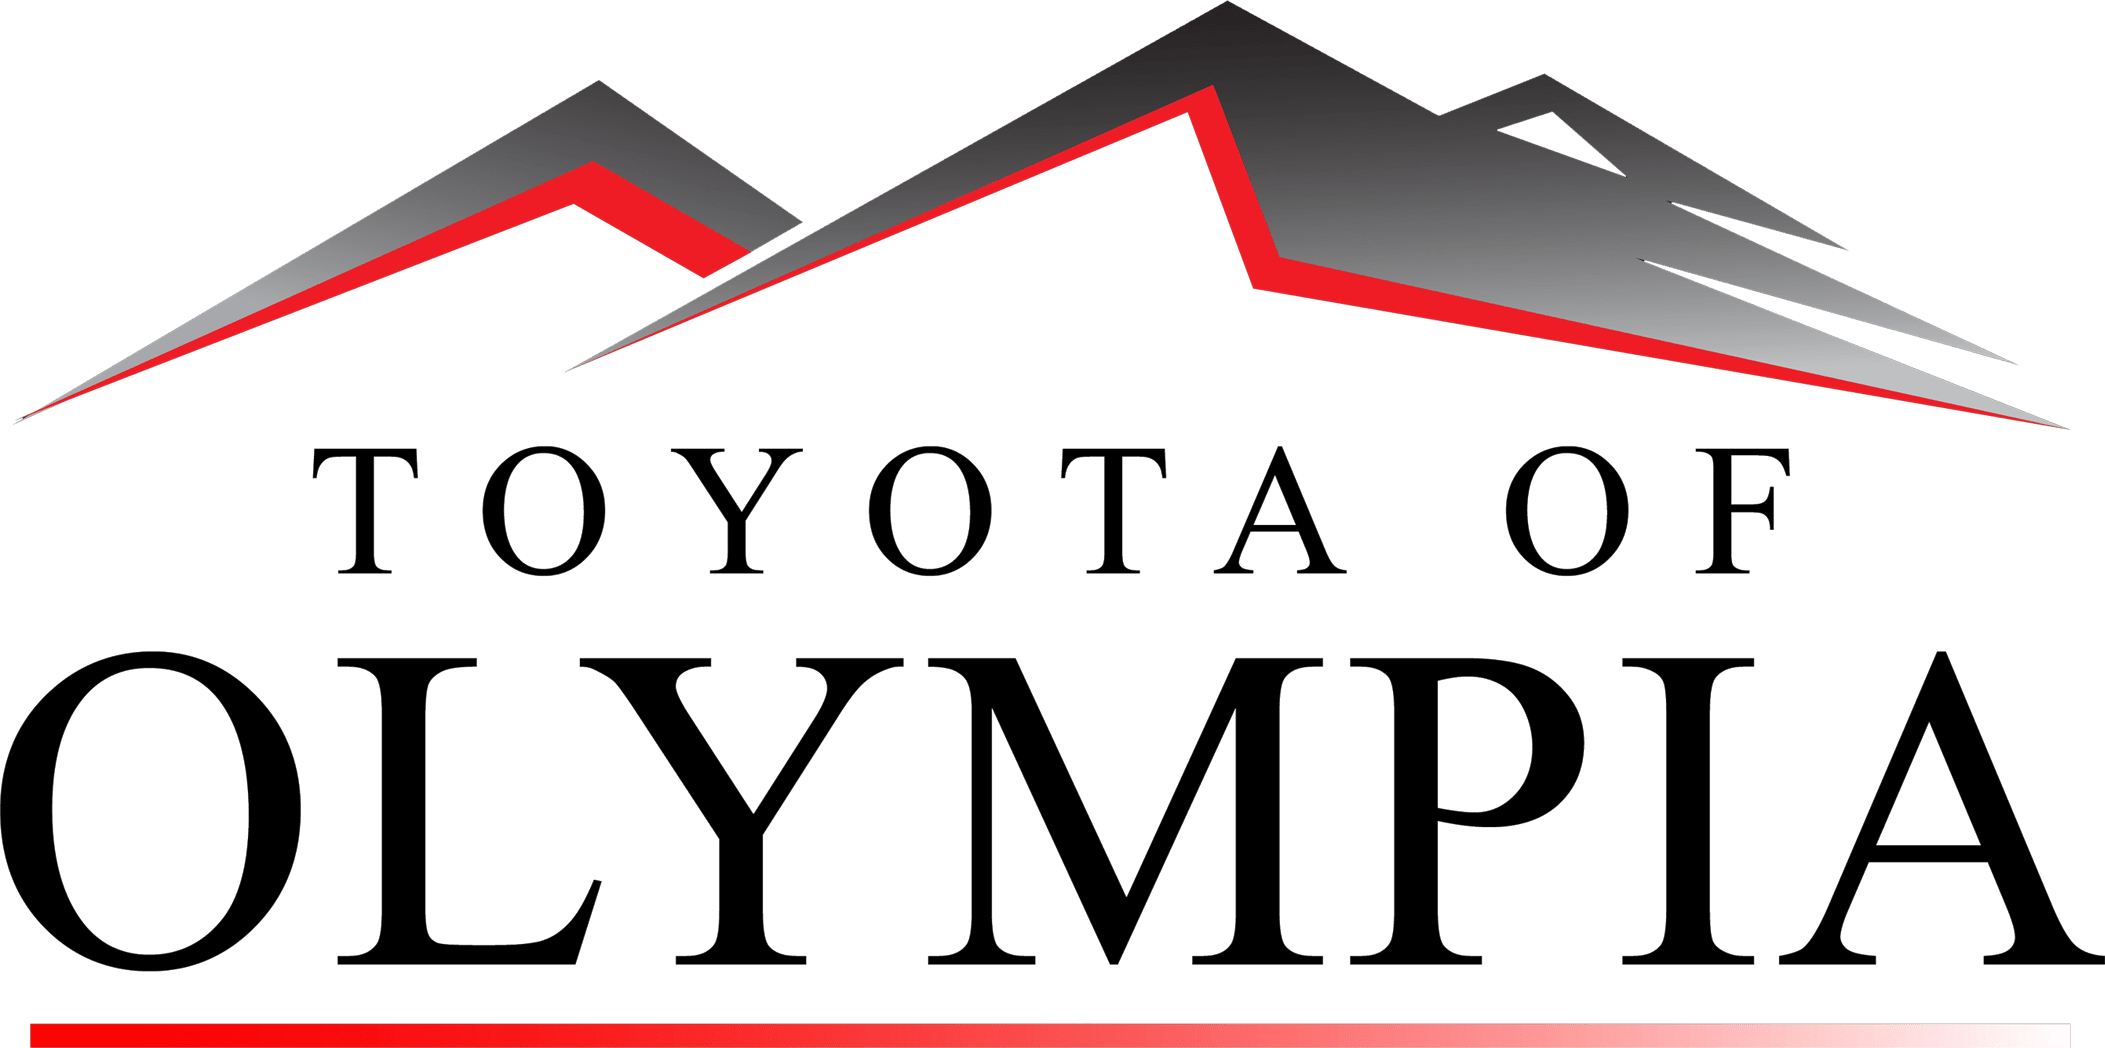 olympia logo black text